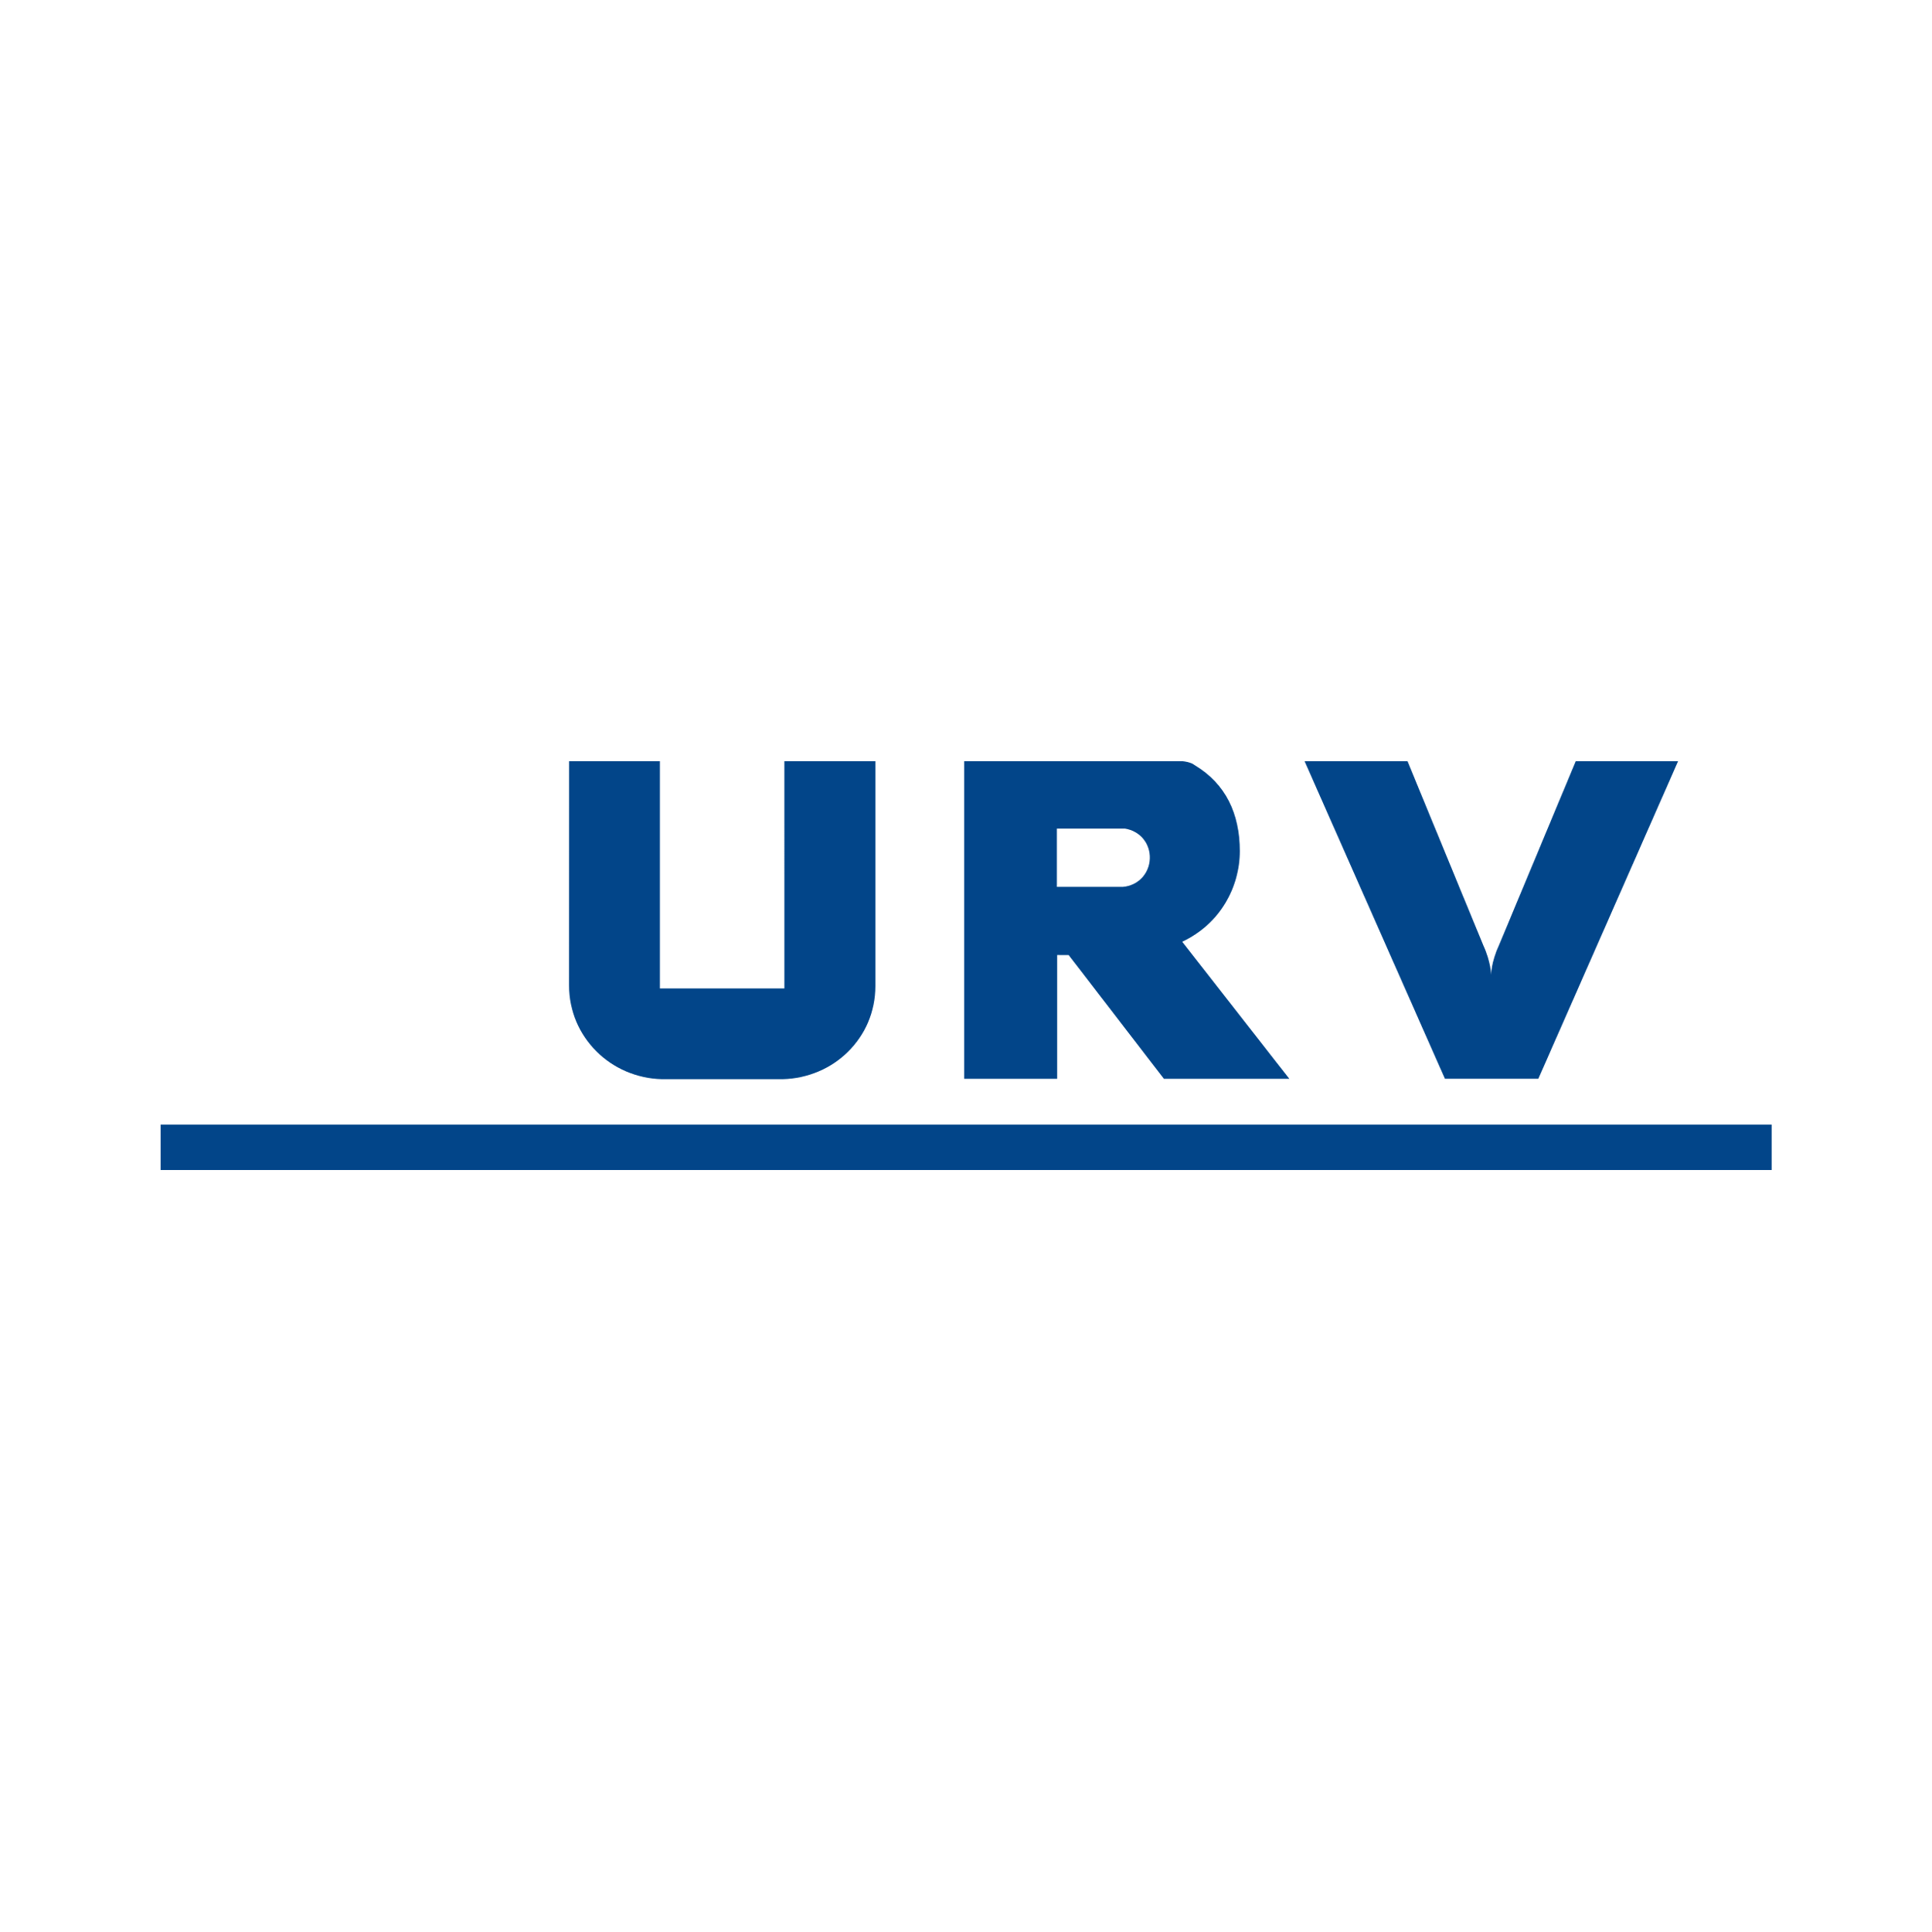 Union Reiseversicherung Logo  Transparent Image